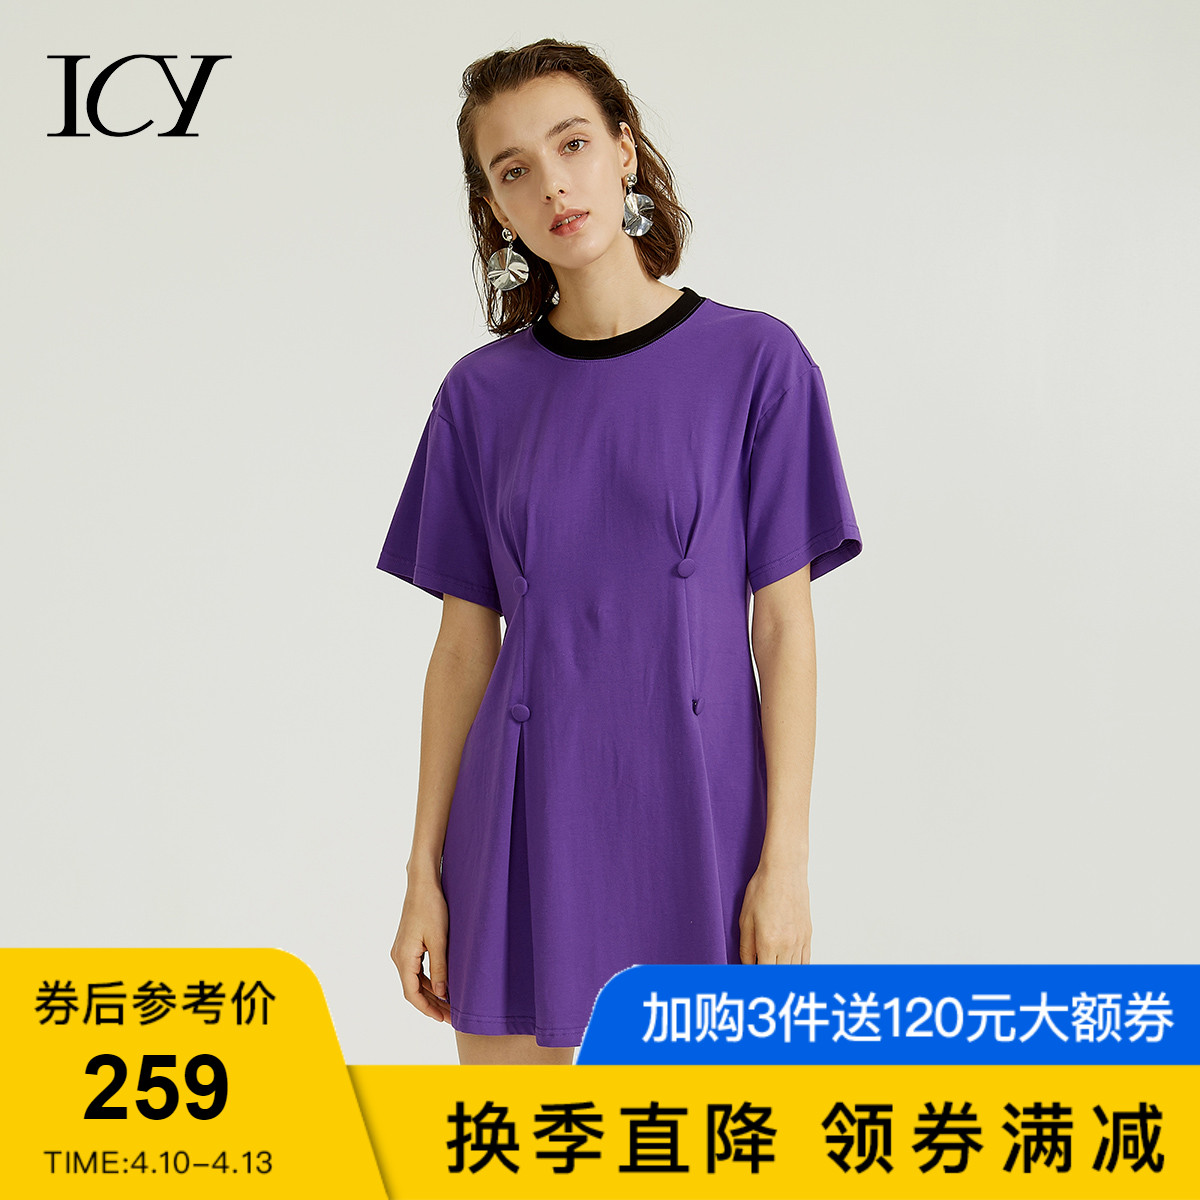 icy紫外光色排扣修腰长T恤中长款体恤短袖棉夏女2018新款圆领上衣